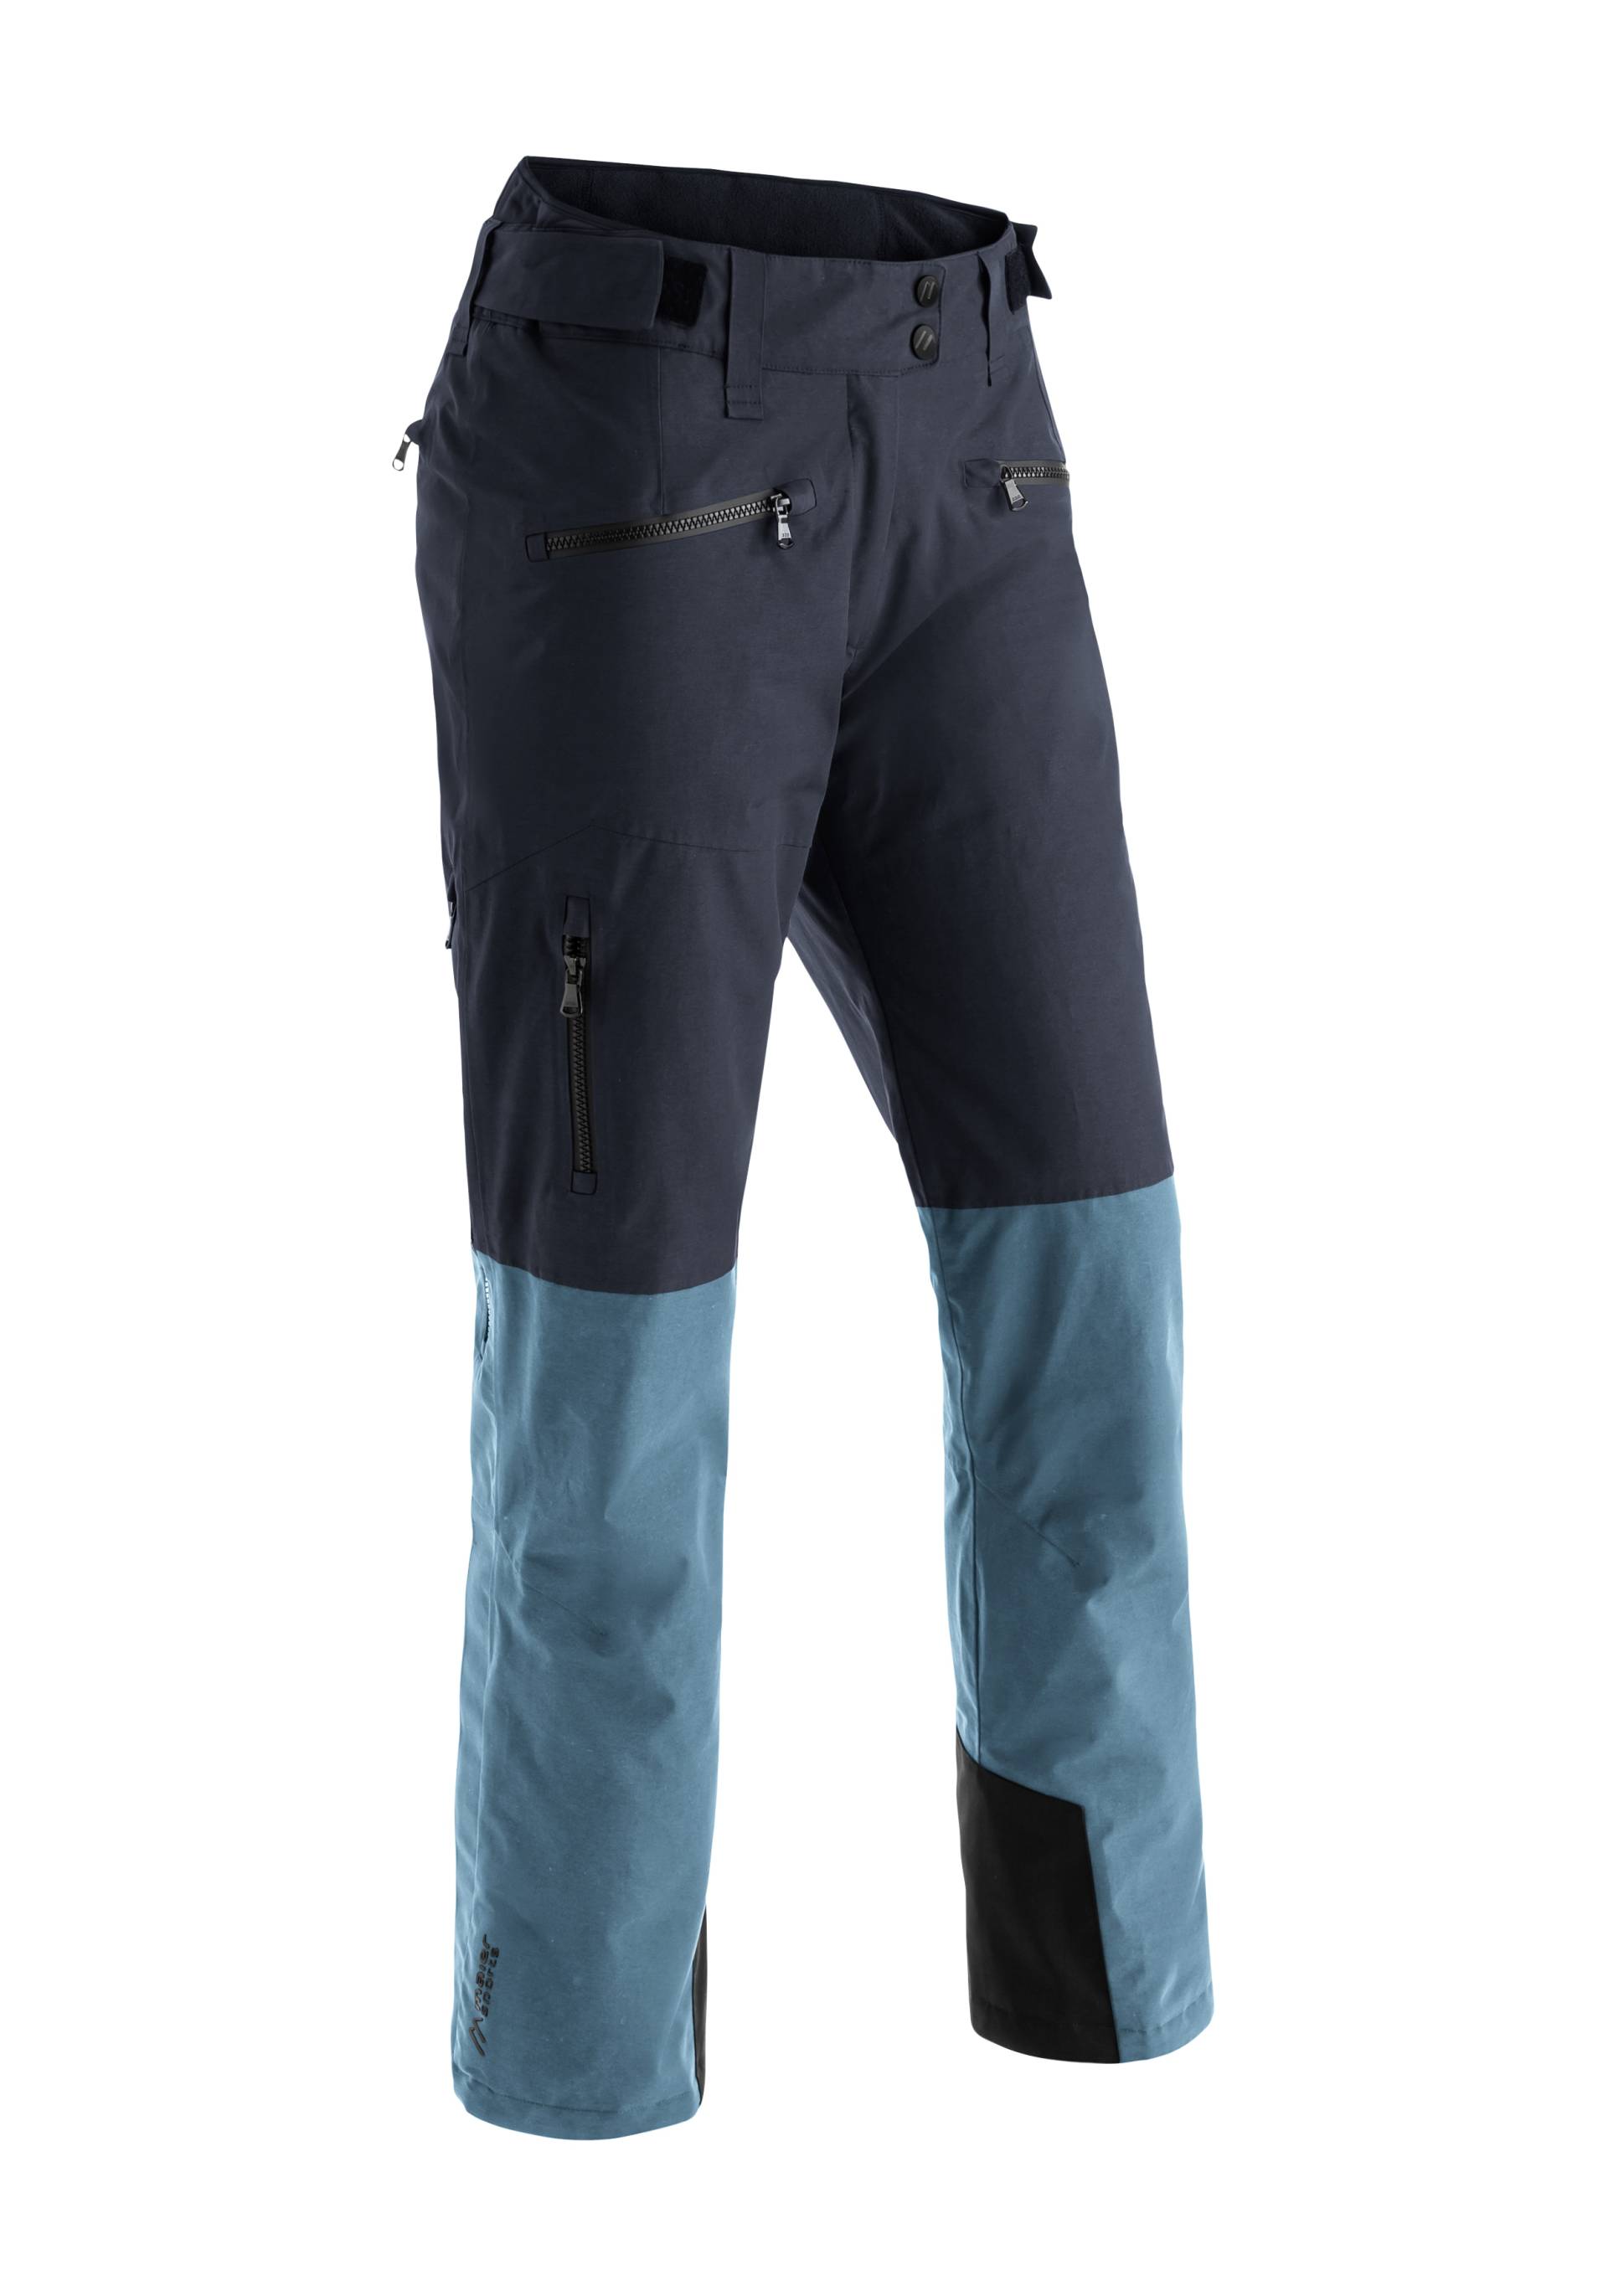 Maier Sports Skihose »Backline Pants W«, Lässig geschnittene Skihose für Piste und Gelände von maier sports